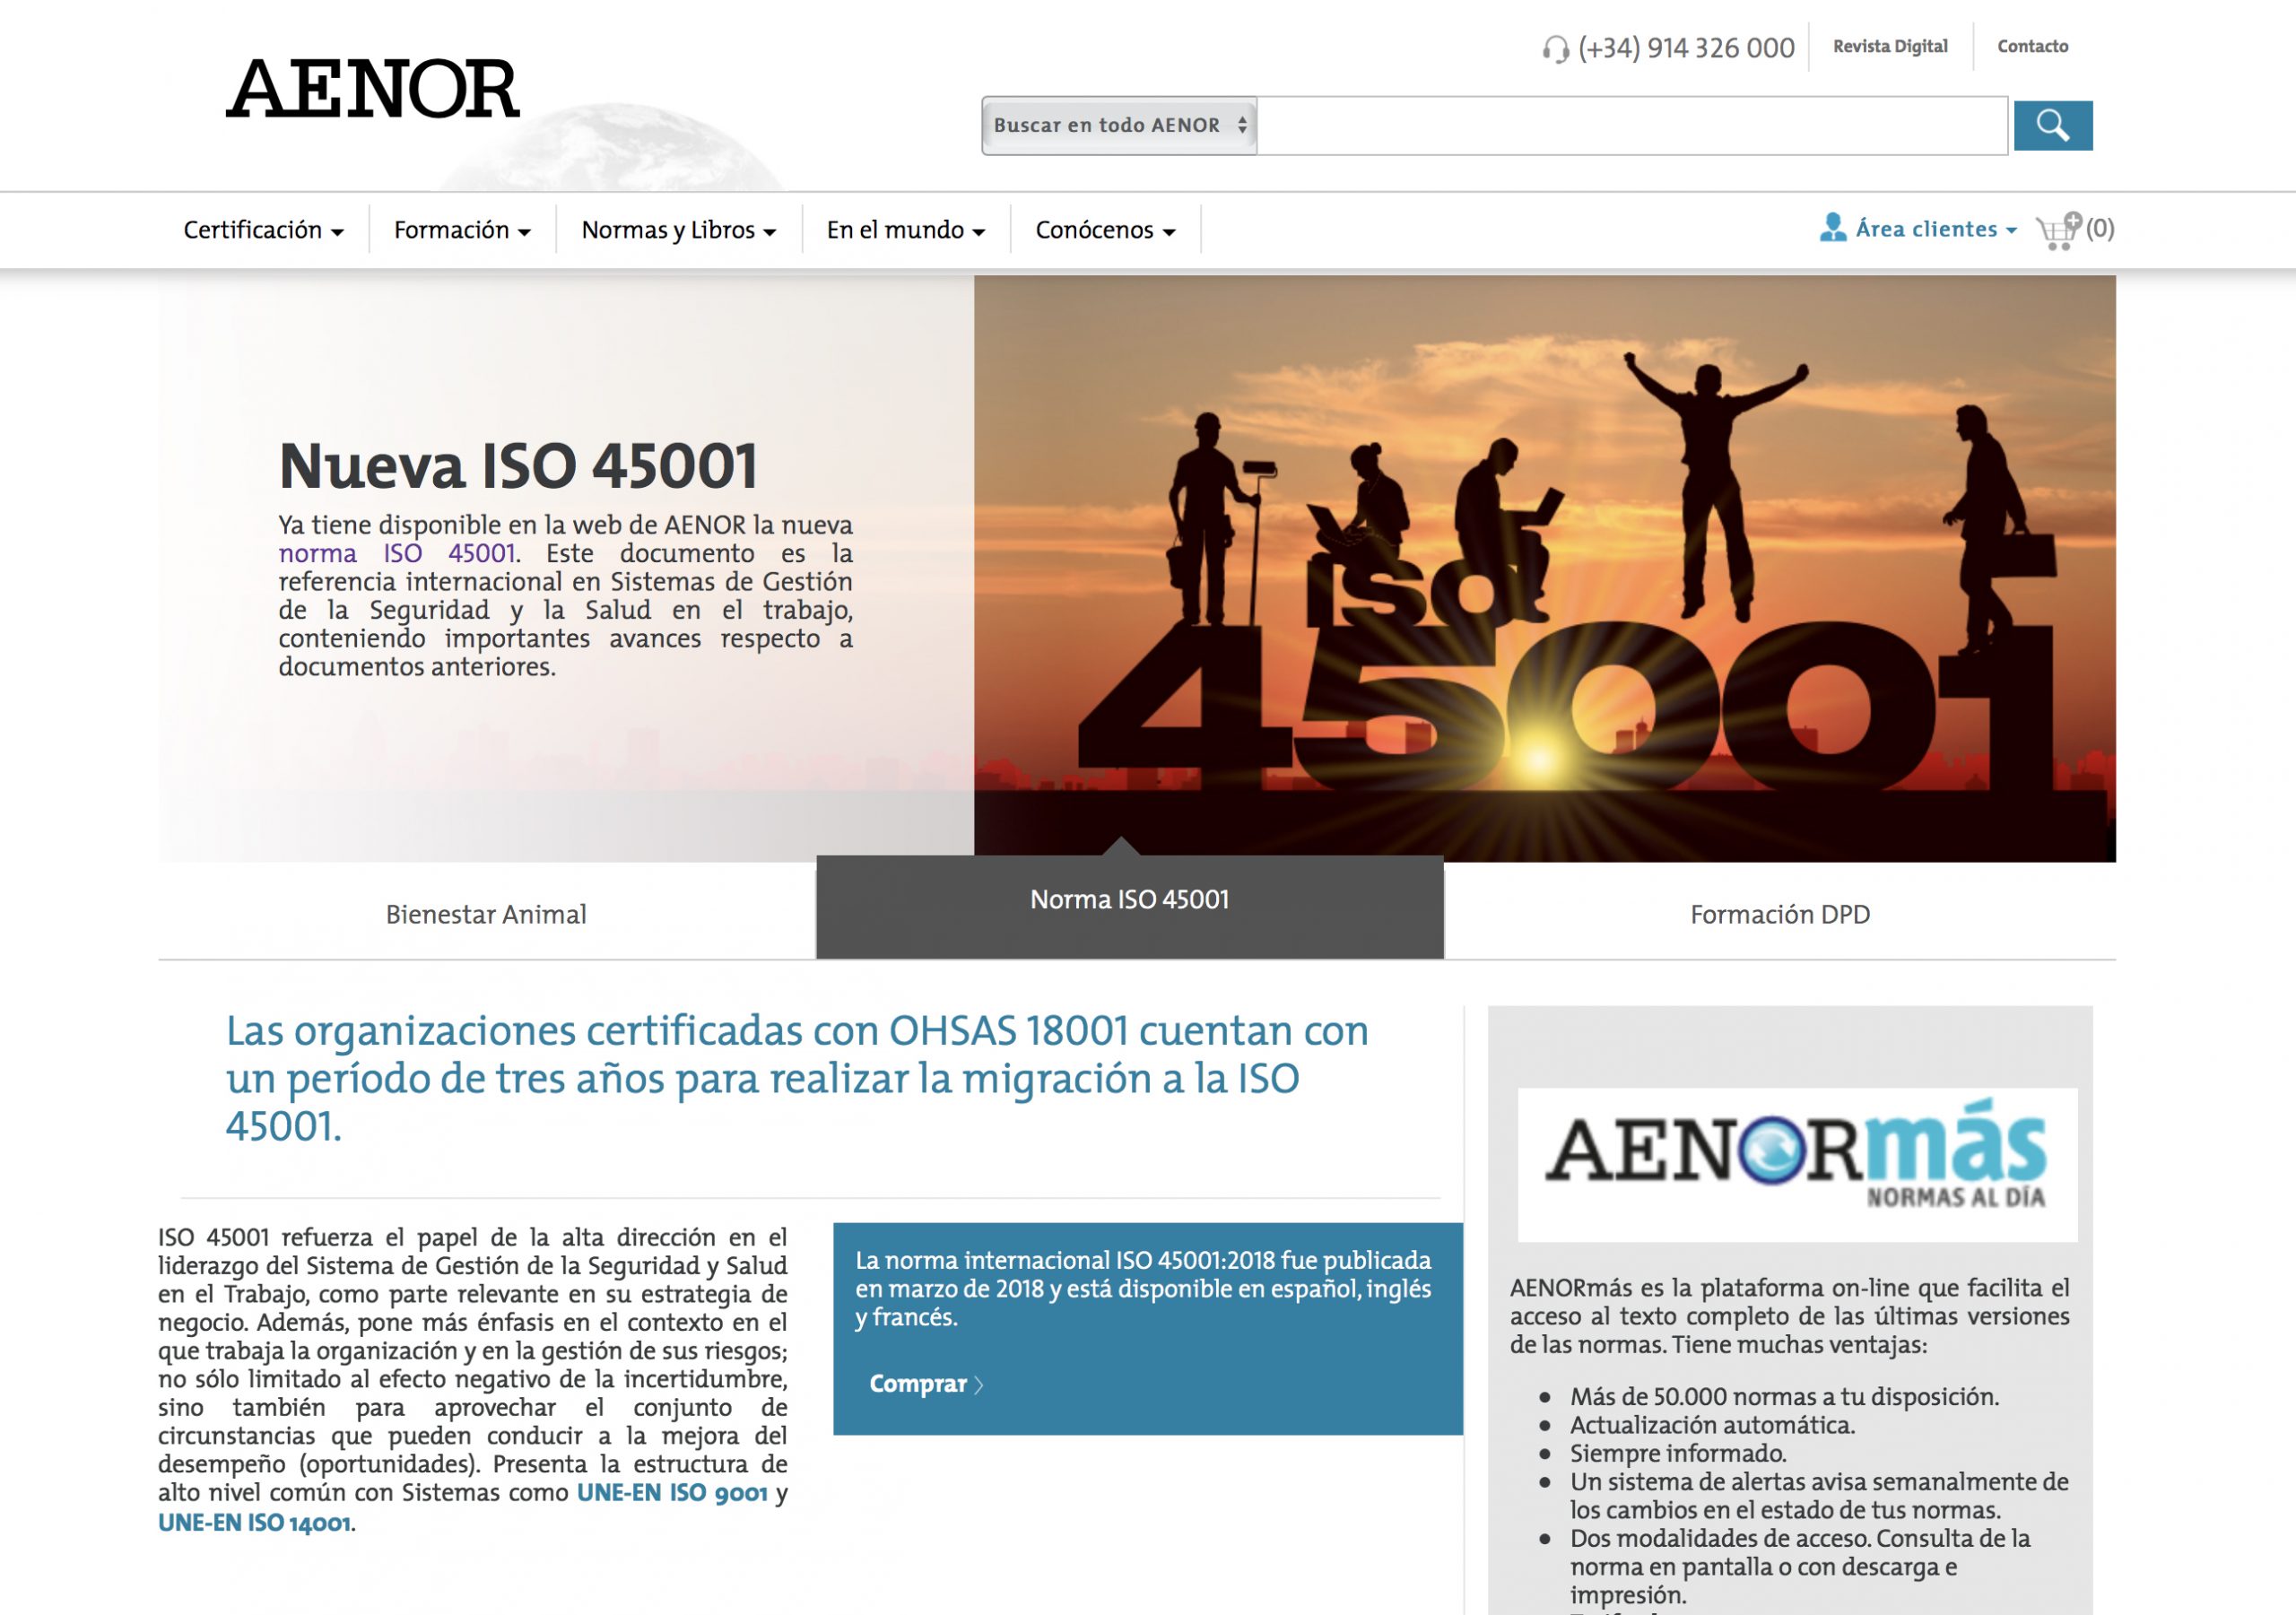 AENOR estrena web con nuevas funcionalidades y un diseño renovado